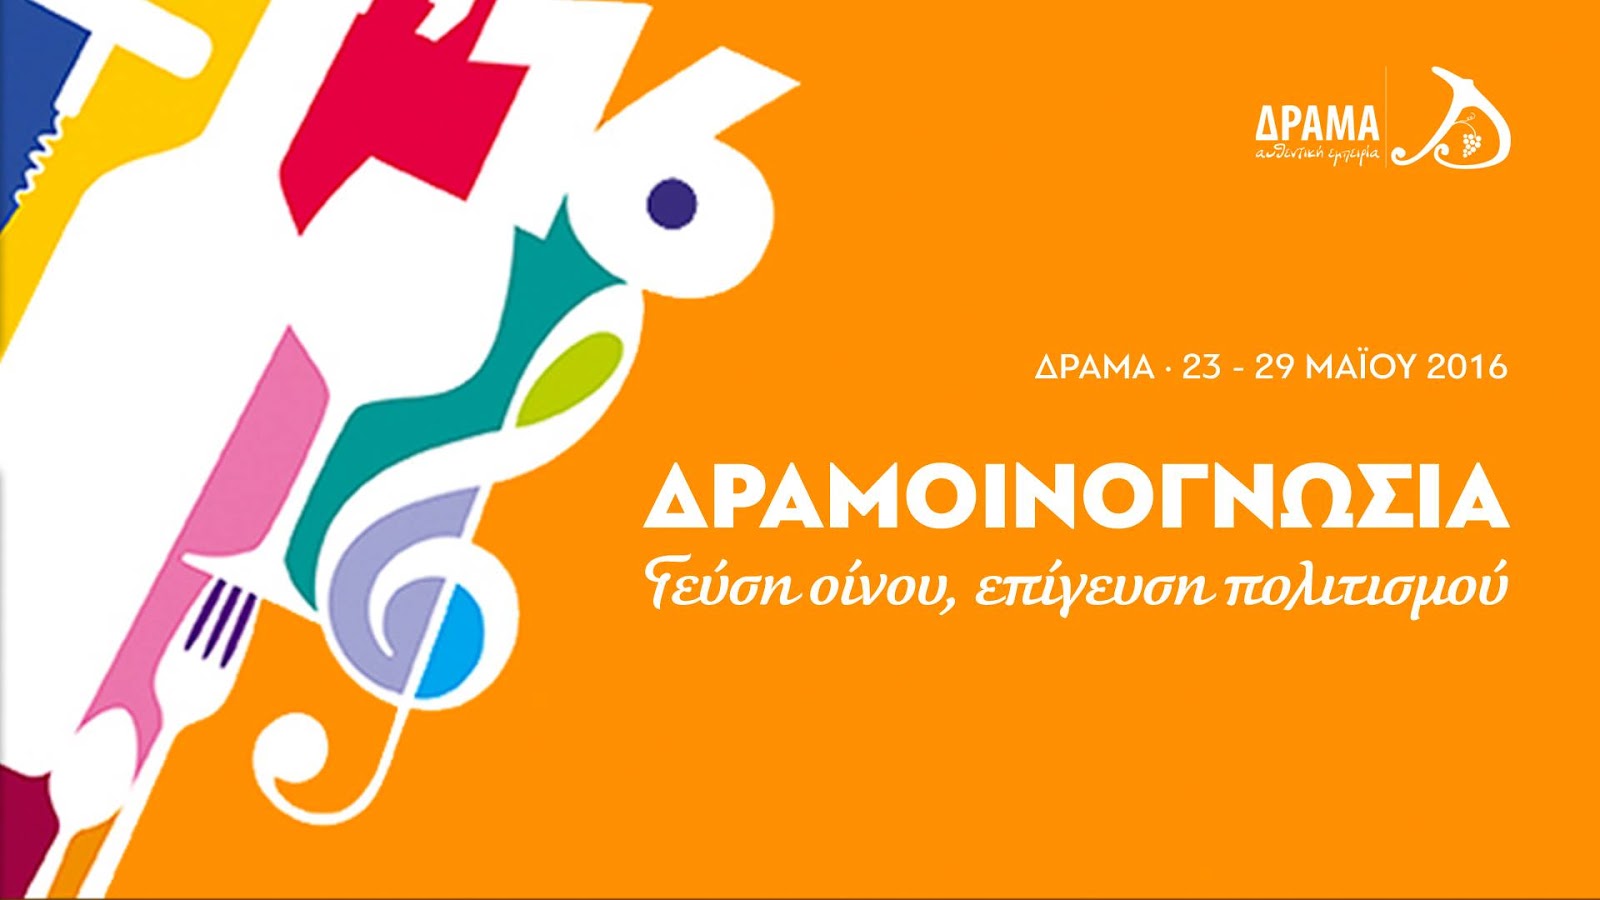 Η αφίσα του φεστιβάλ της Δραμοινογνωσίας